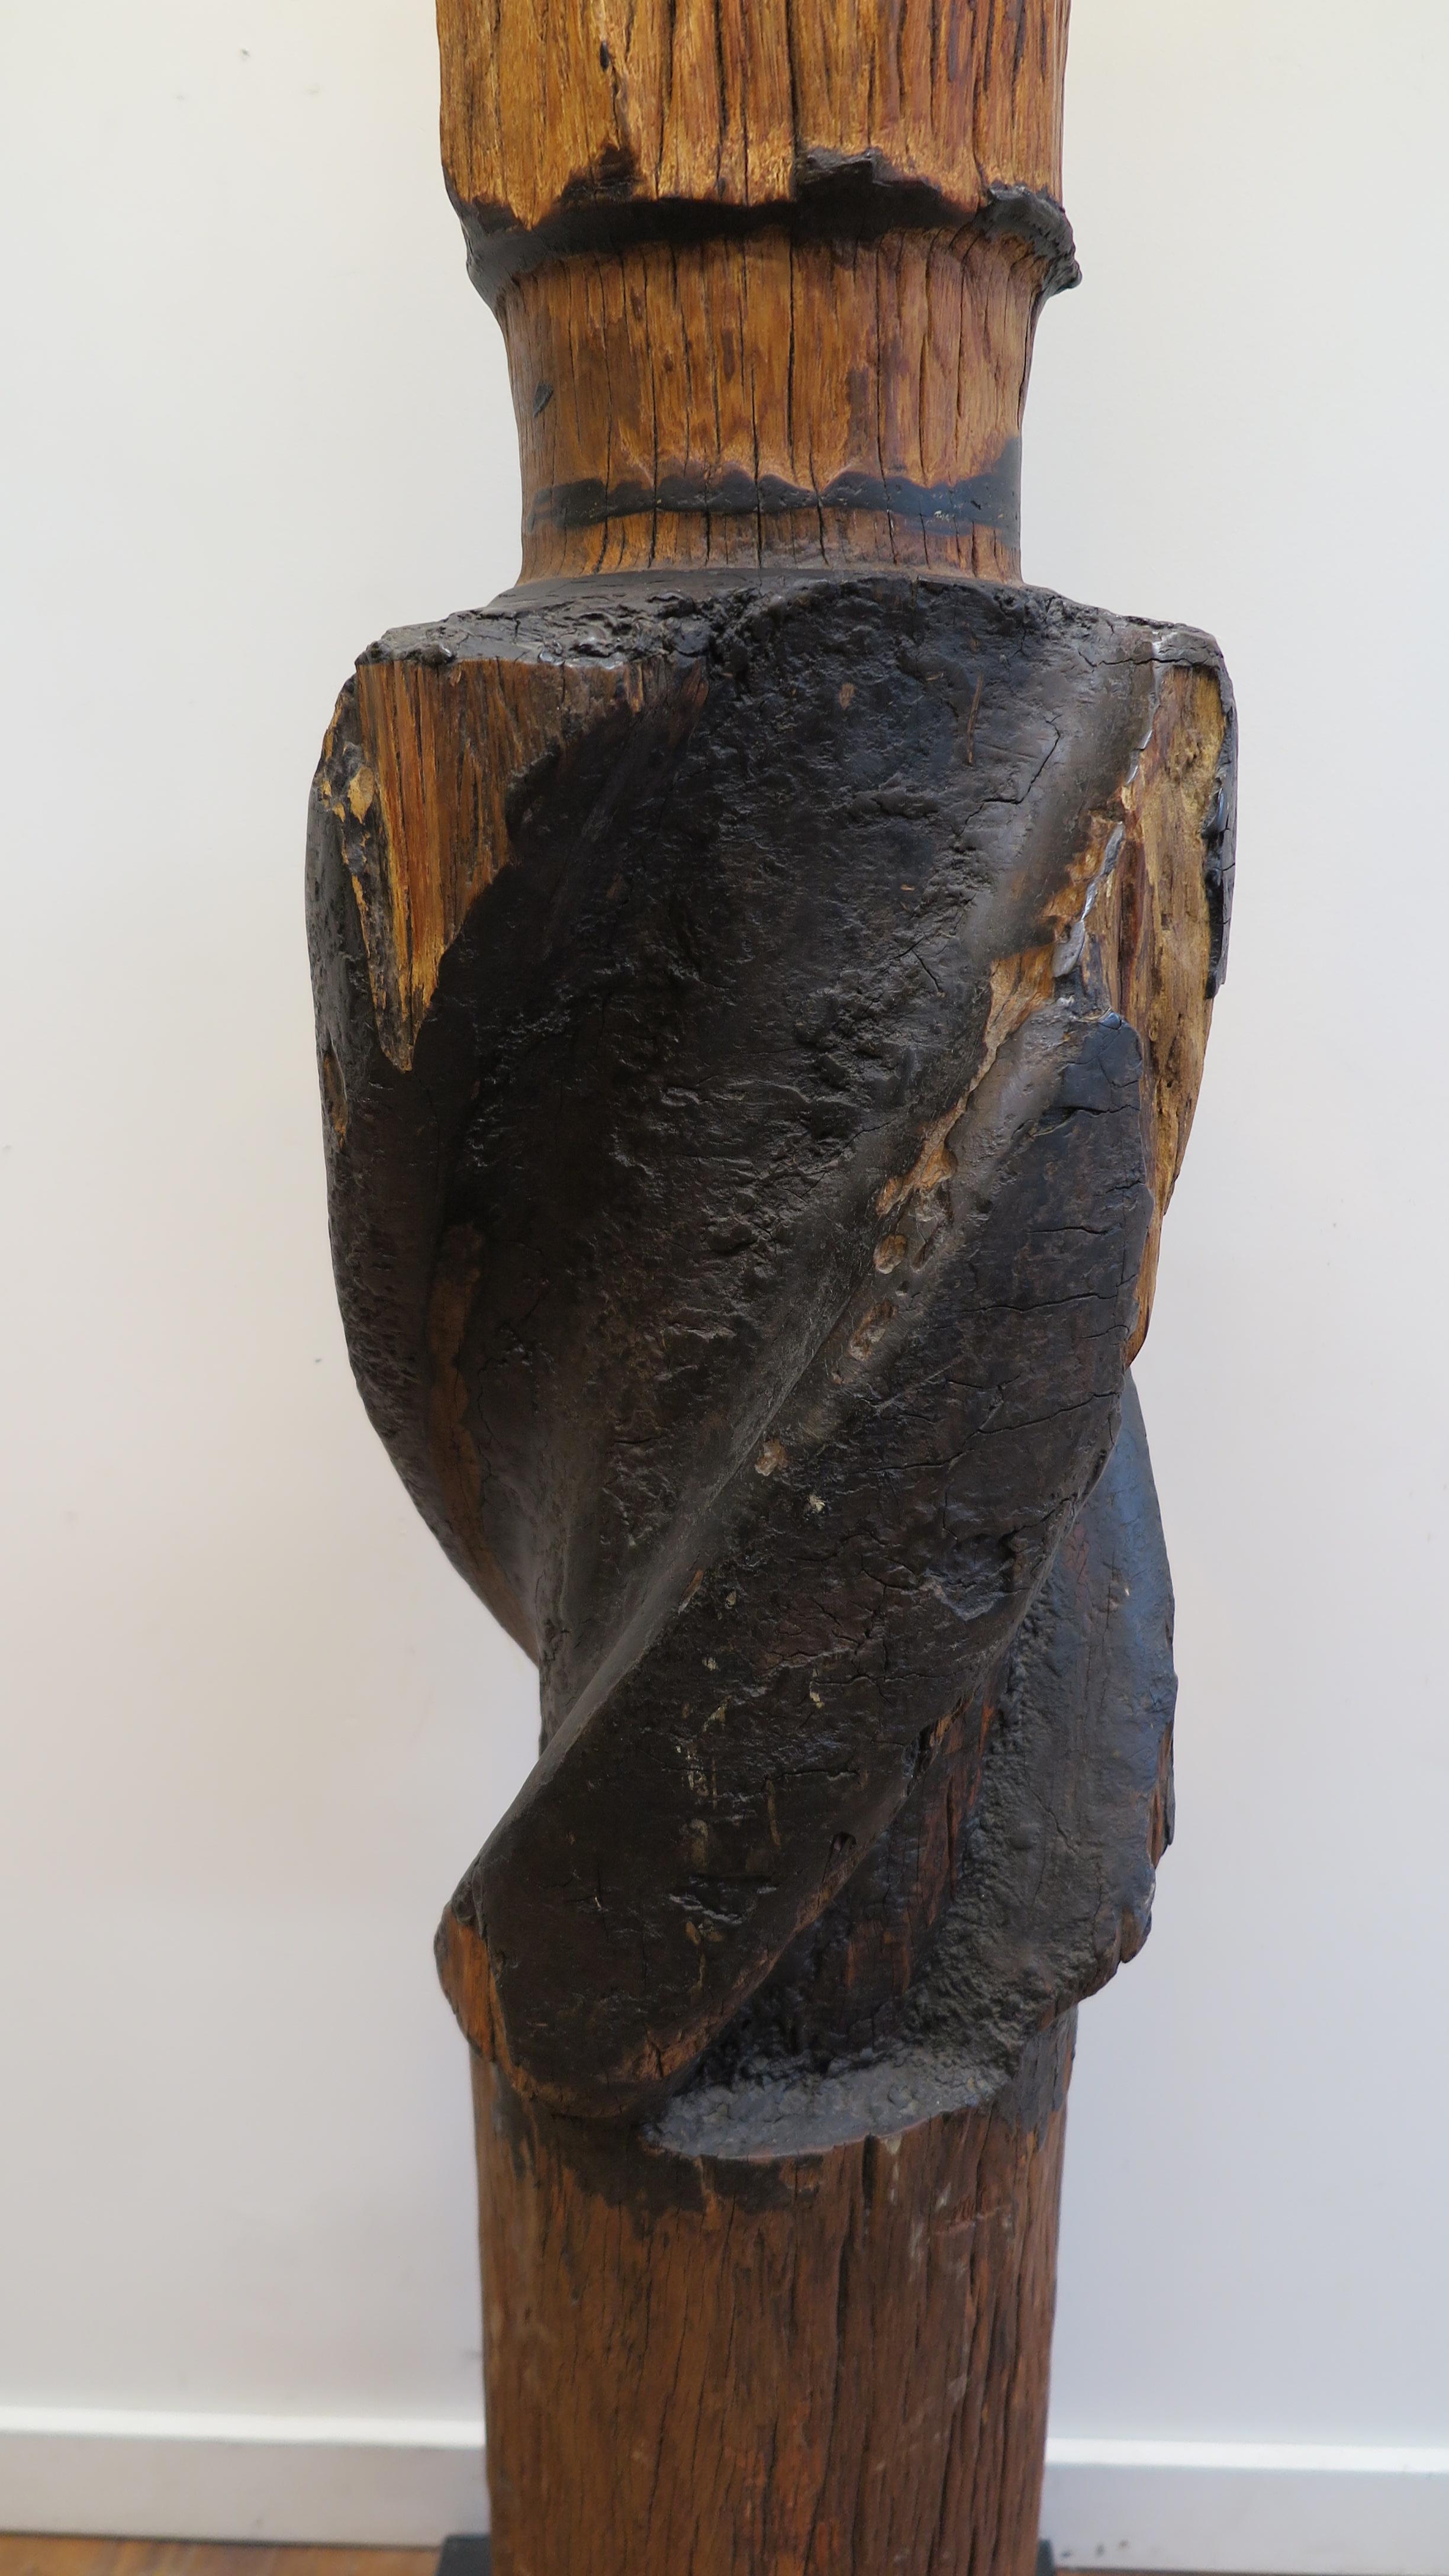 zahnrad aus einer Zuckerrohrpresse aus dem 19. Jahrhundert, montiert als Gebrauchskunst. Massives handgeschnitztes Zahnrad aus Redwood zum Pressen von Zuckerrohr aus den frühen 1800er Jahren, Thailand. Eine wunderbare, faszinierende Skulptur, die in